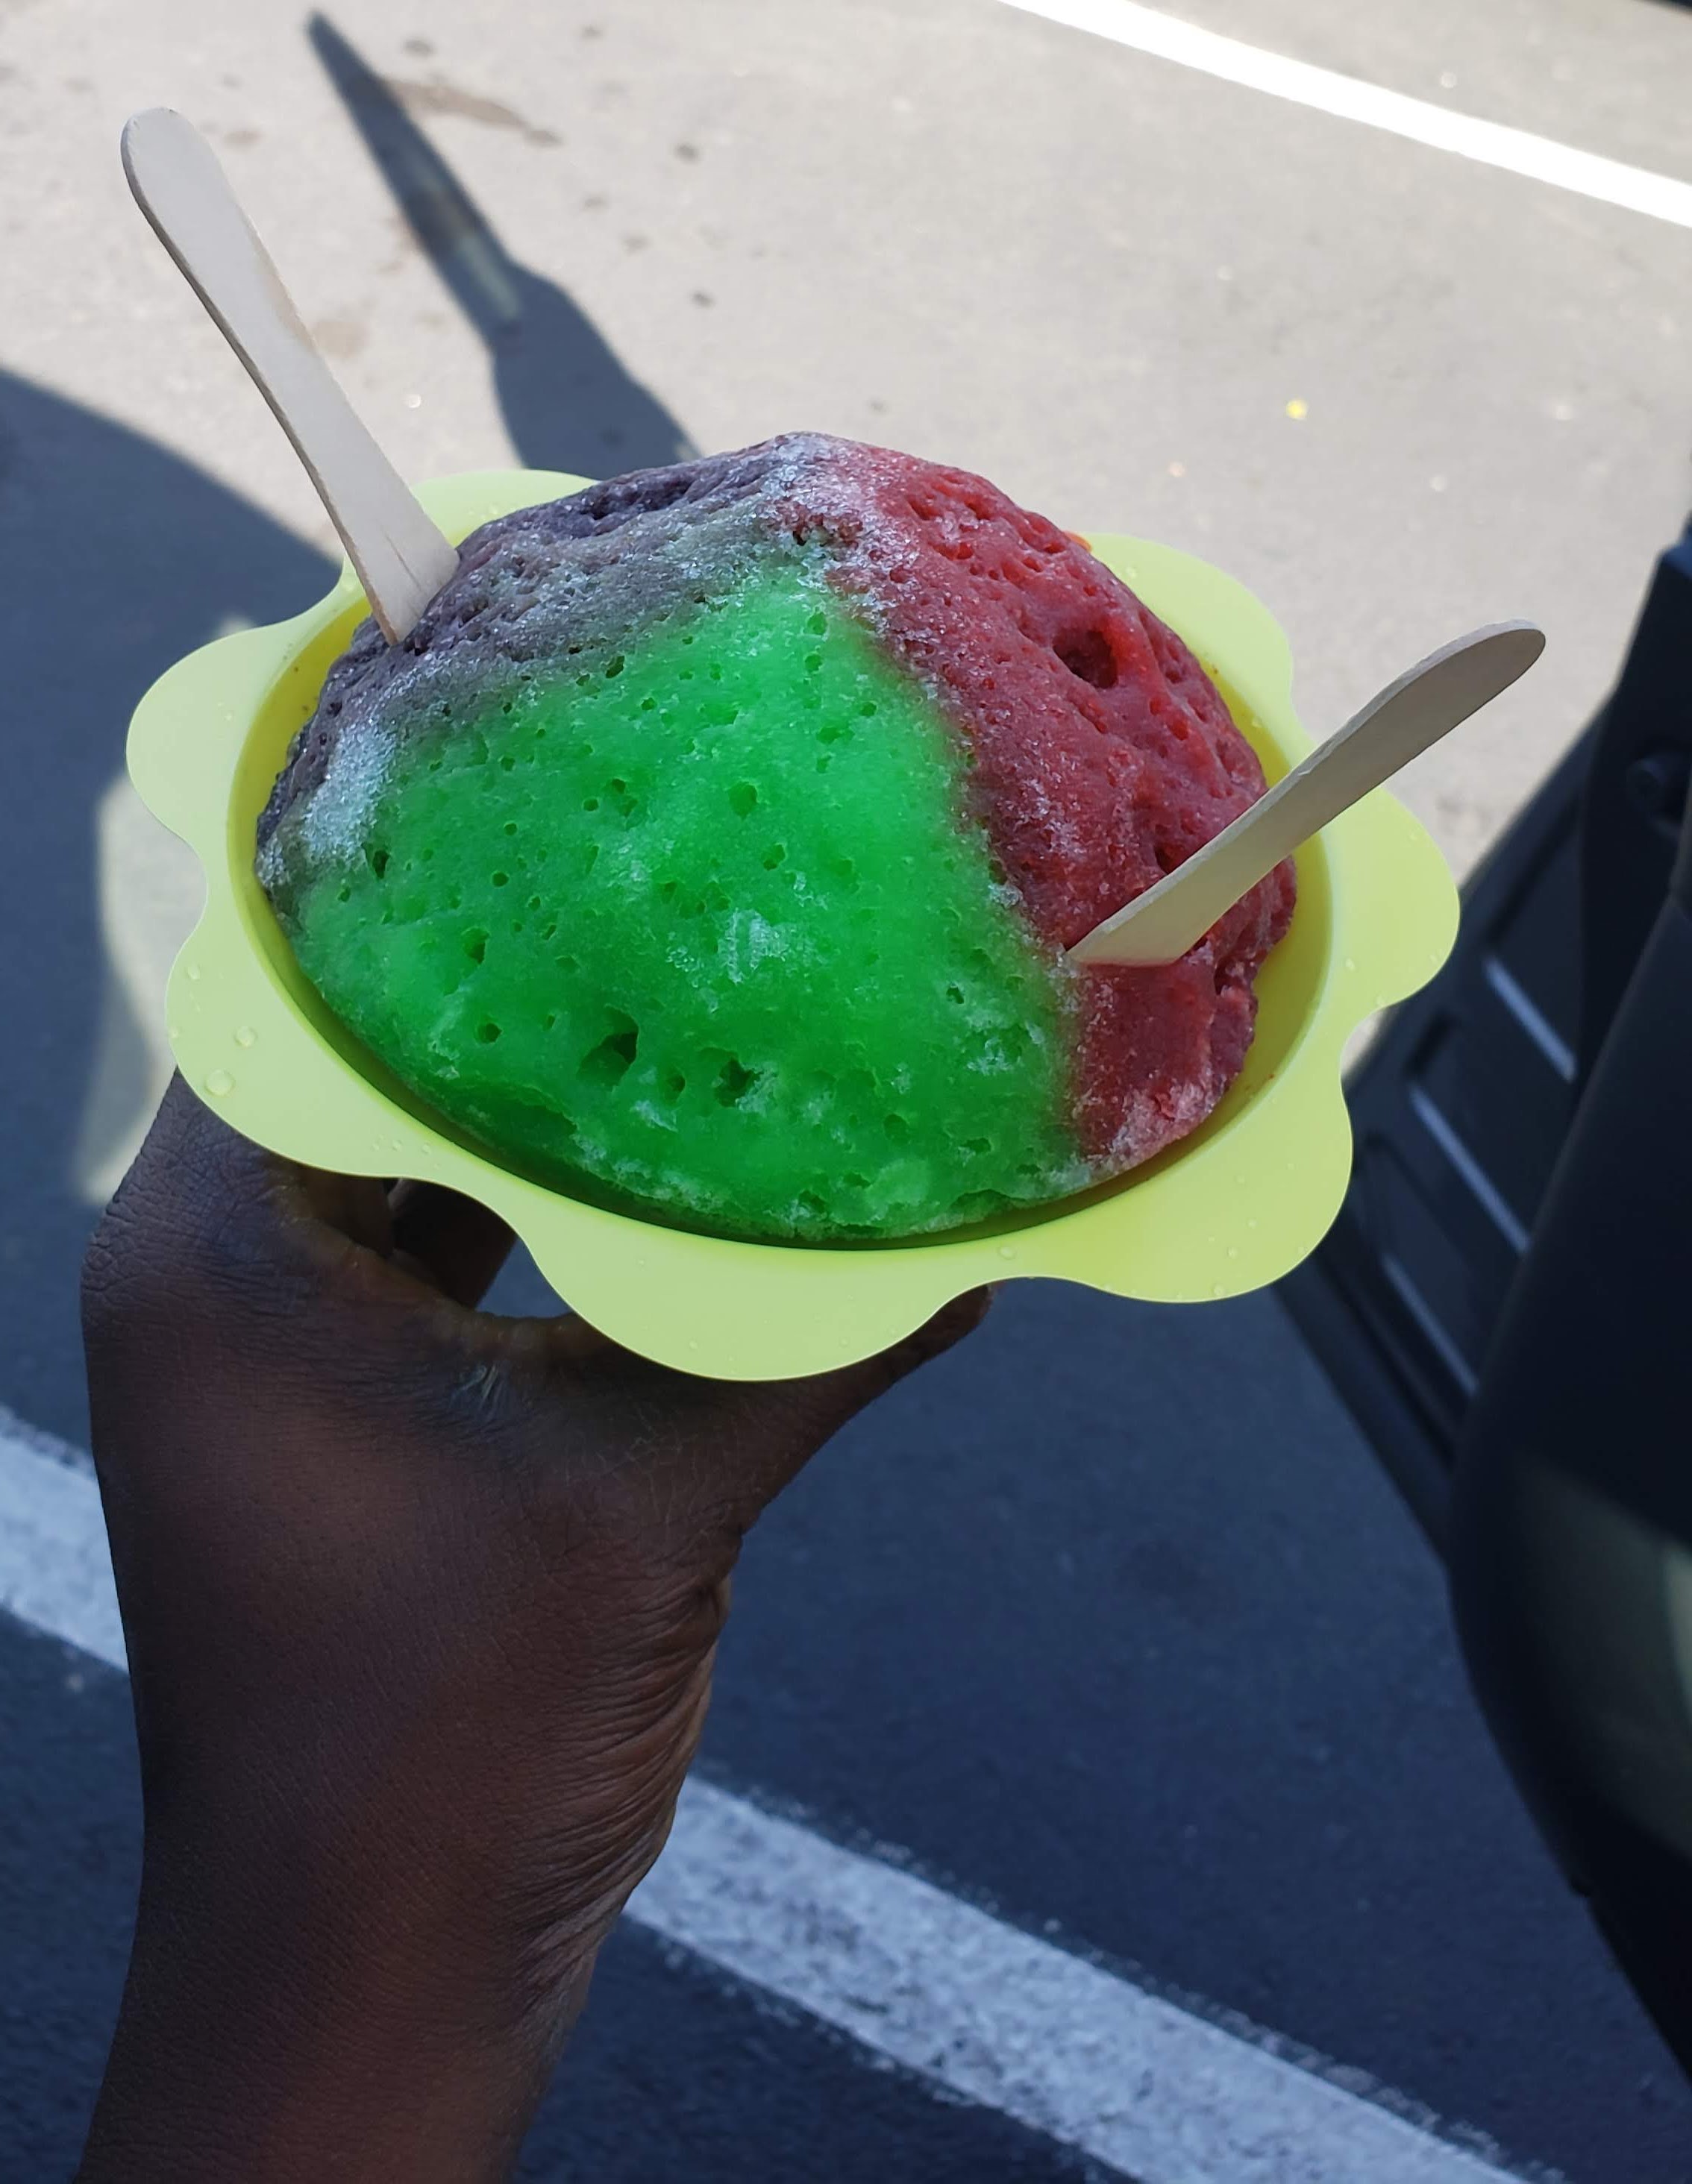 Don’t Miss Coconut Glen’s Along Road to Hana – Homemade Ice Cream!